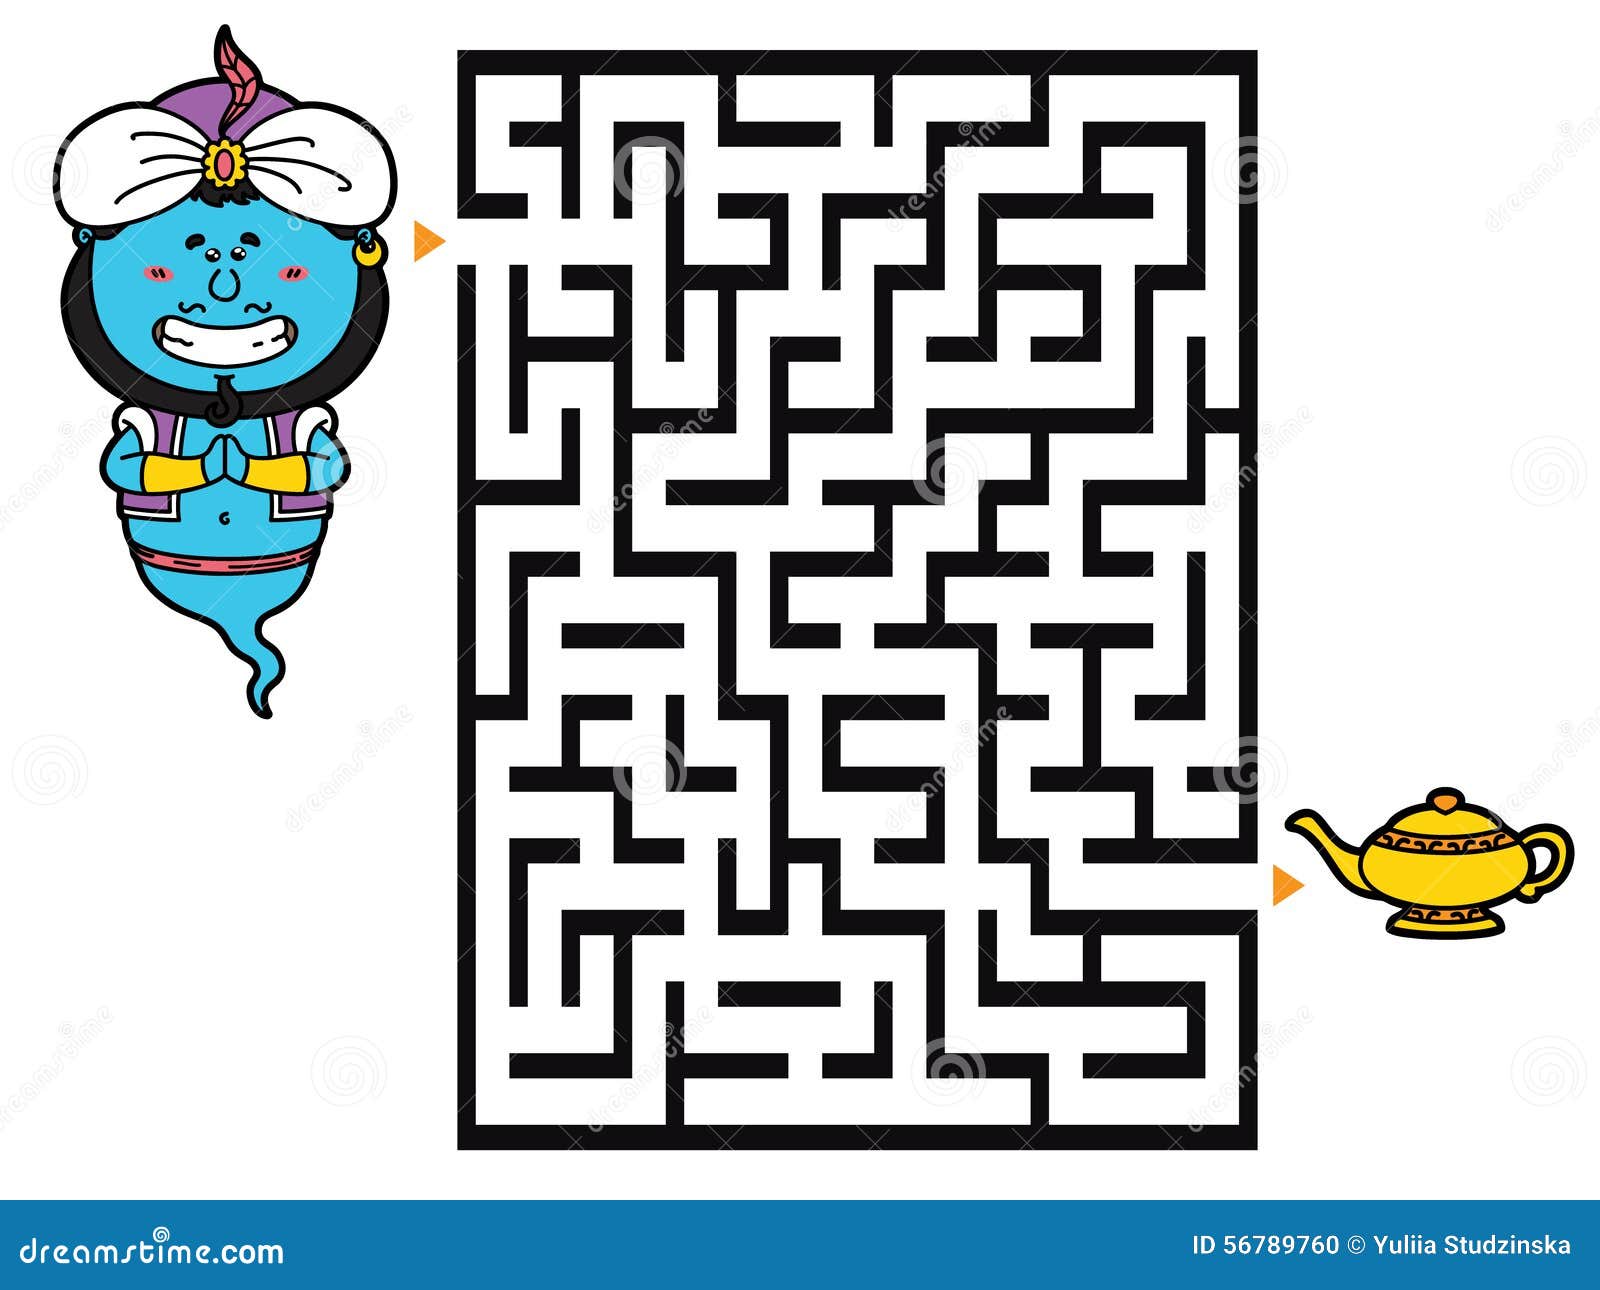 Geniespel. Vectorillustratie van labyrintspel met leuk Genie voor kinderen